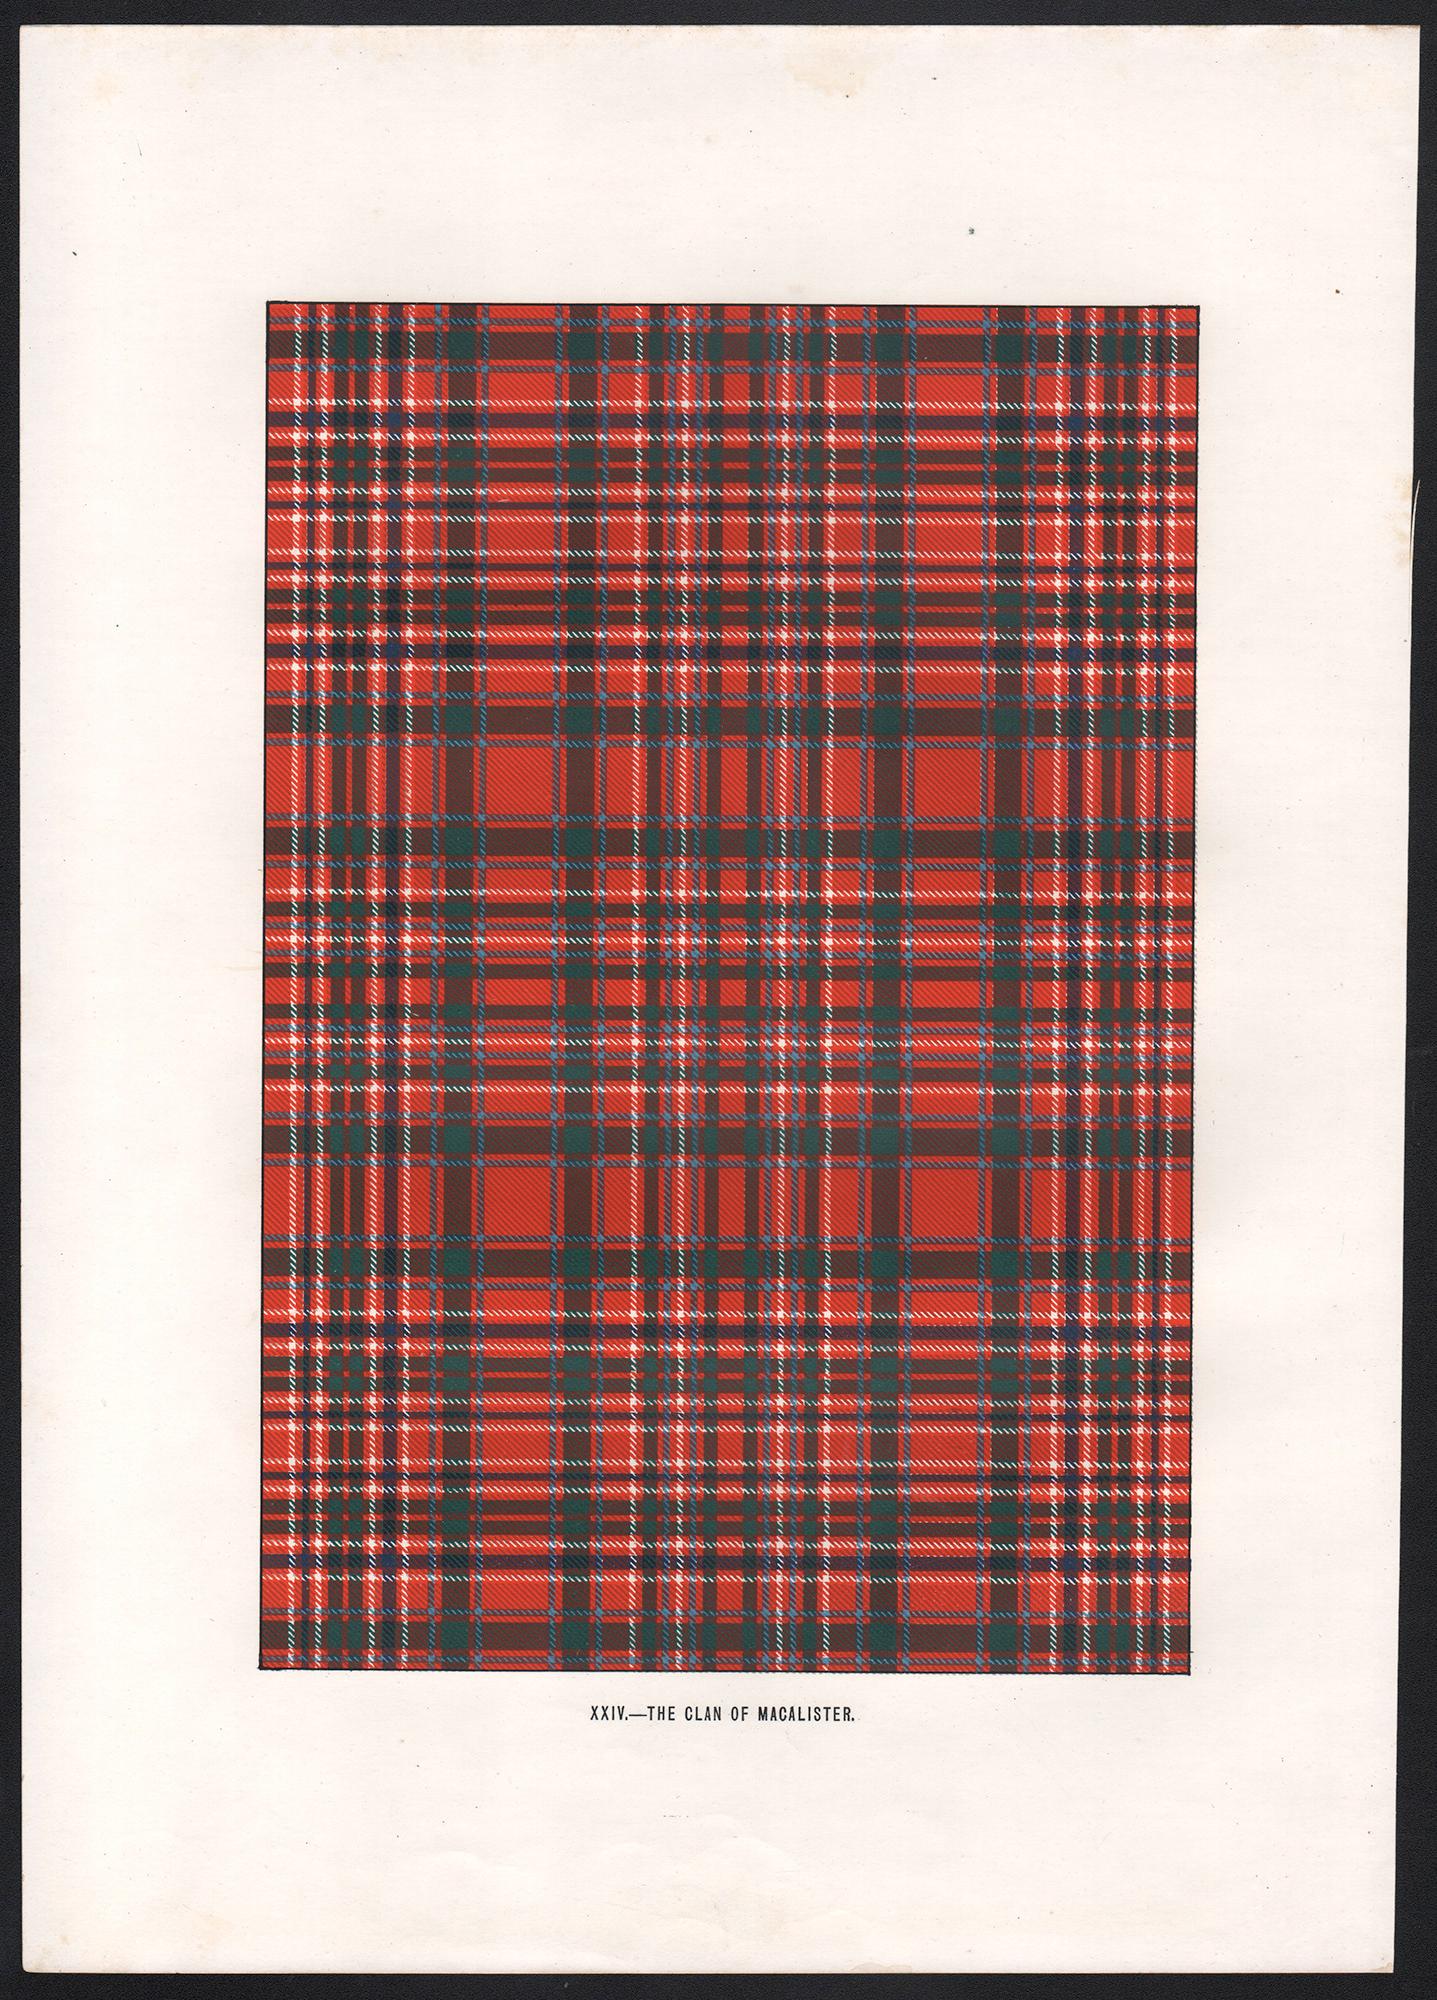 Lithographie du clan de Macalister (tartan), Écosse écossaise de conception artistique - Print de Unknown